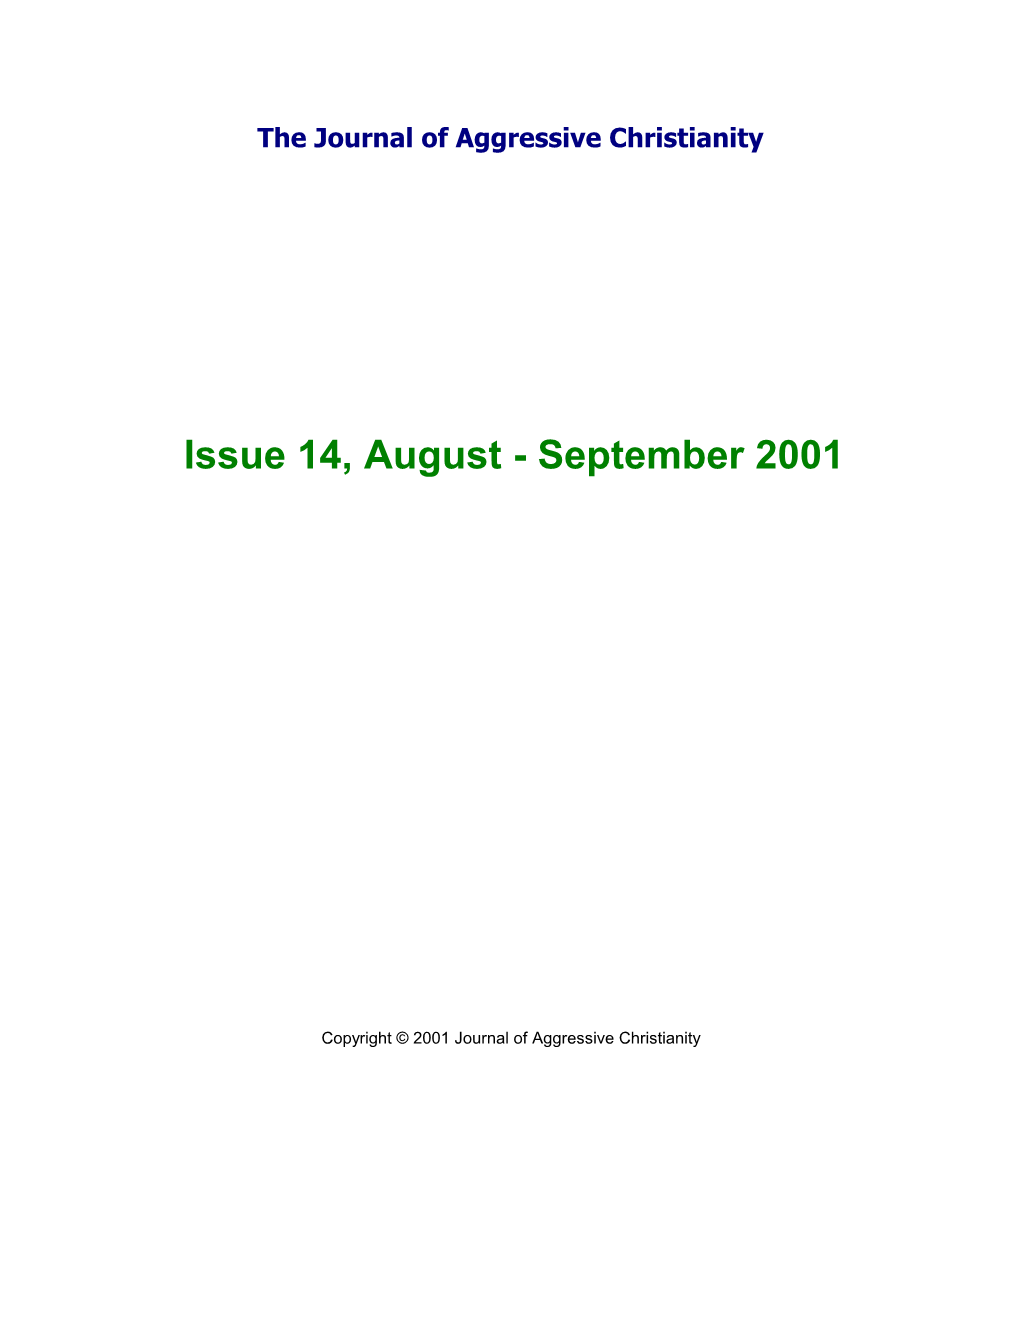 Issue 14, August - September 2001